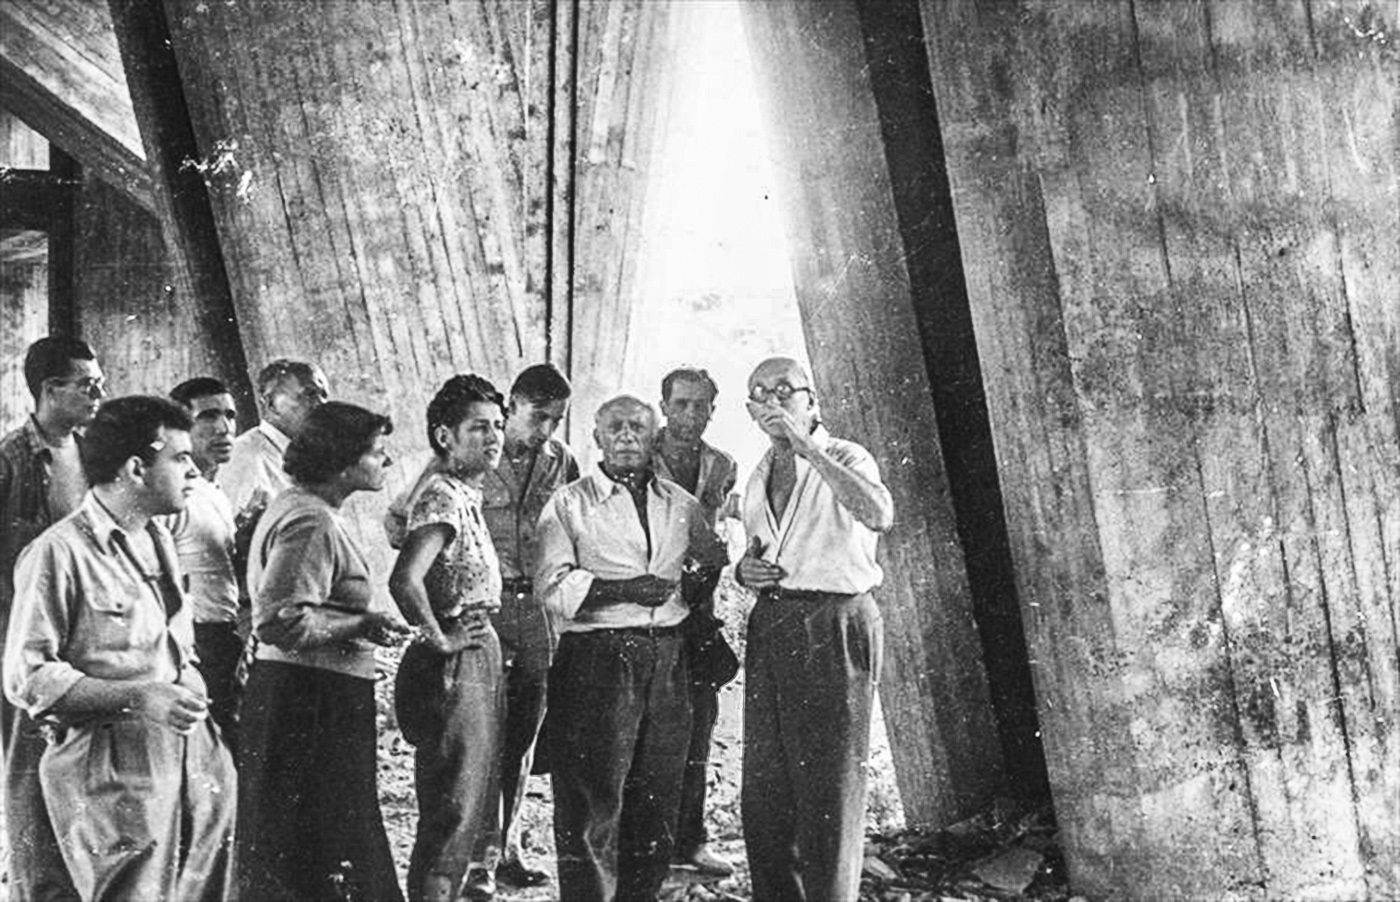 le-corbusier-et-pablo-picasso-sur-le-chantier-de-lunitc3a9-dhabitation-de-marseille-1949-photographe-non-mentionnc3a9col